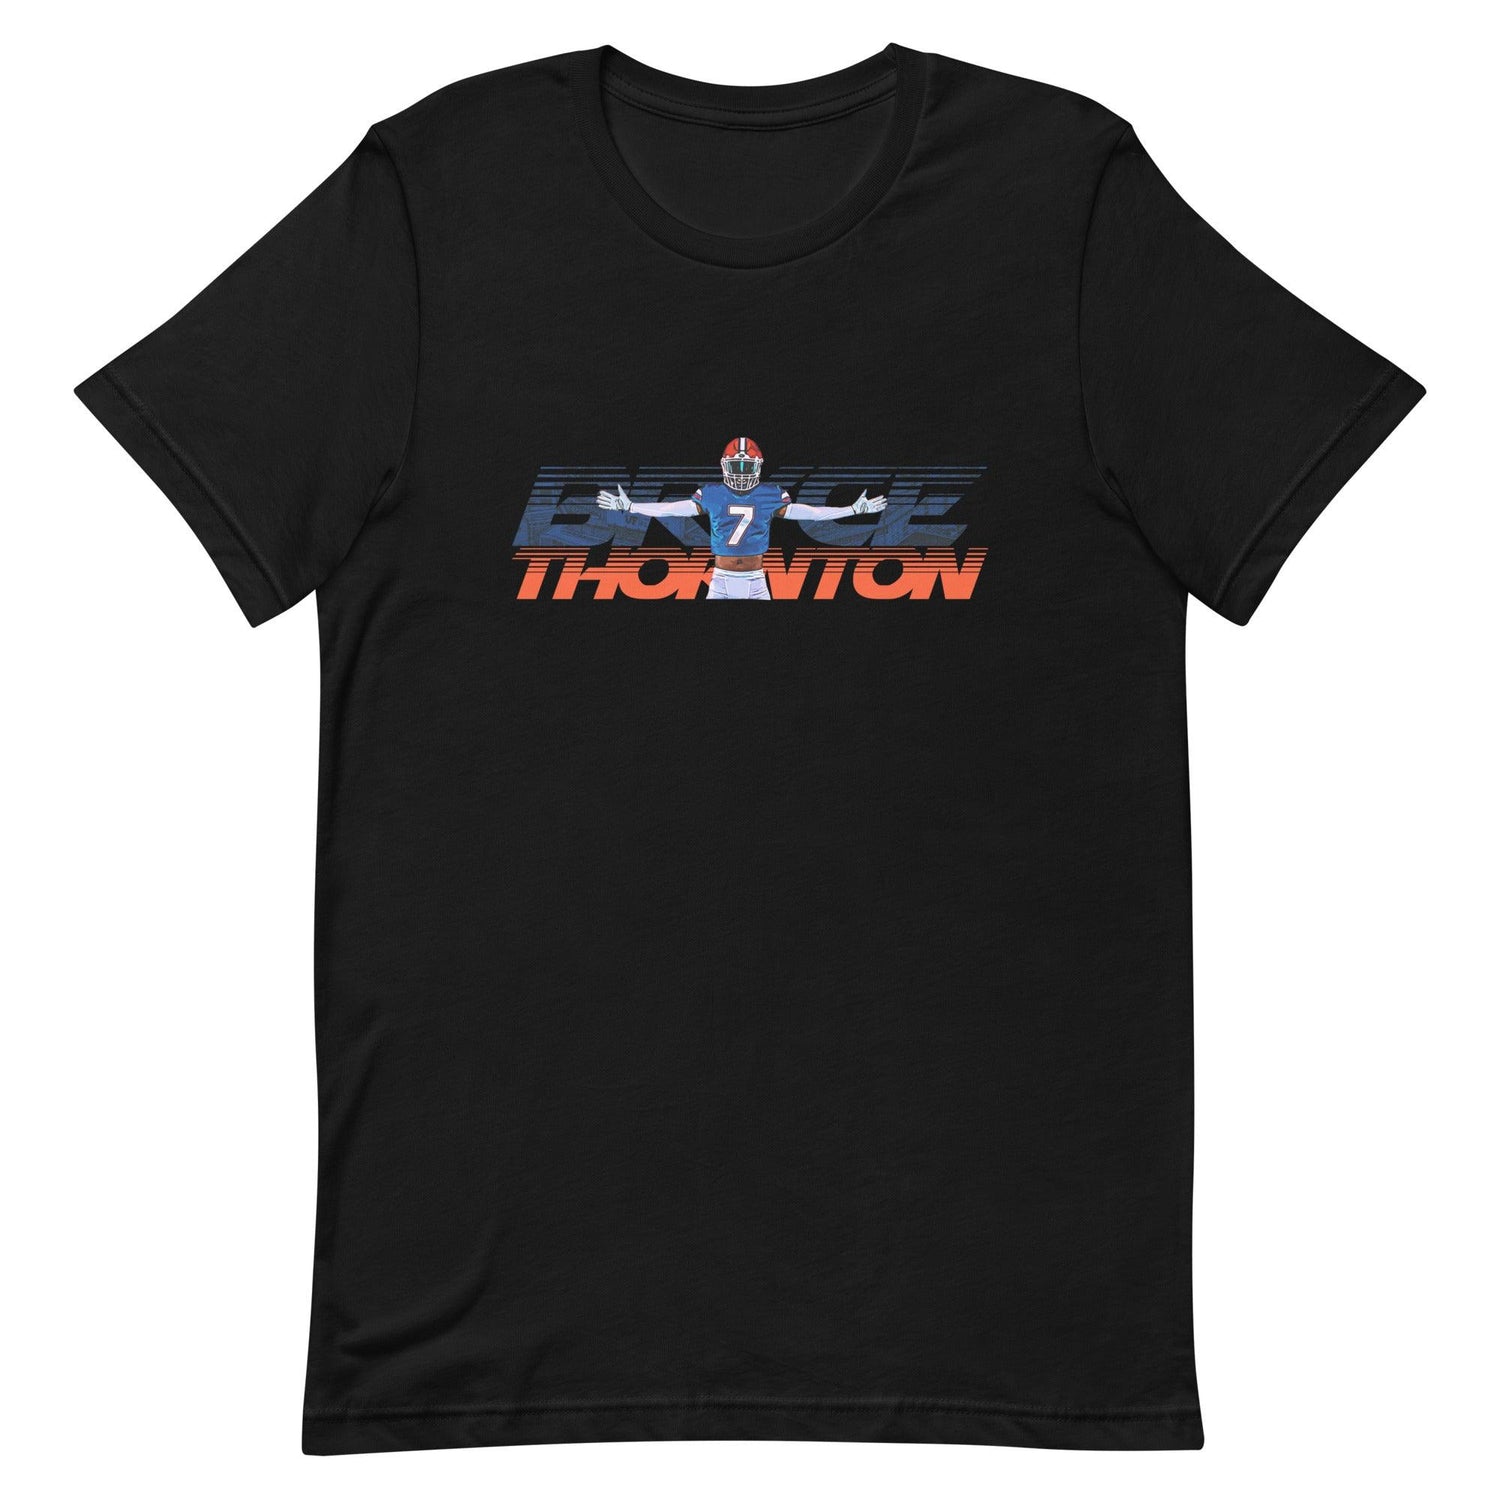 Bryce Thornton "Gameday" t-shirt - Fan Arch